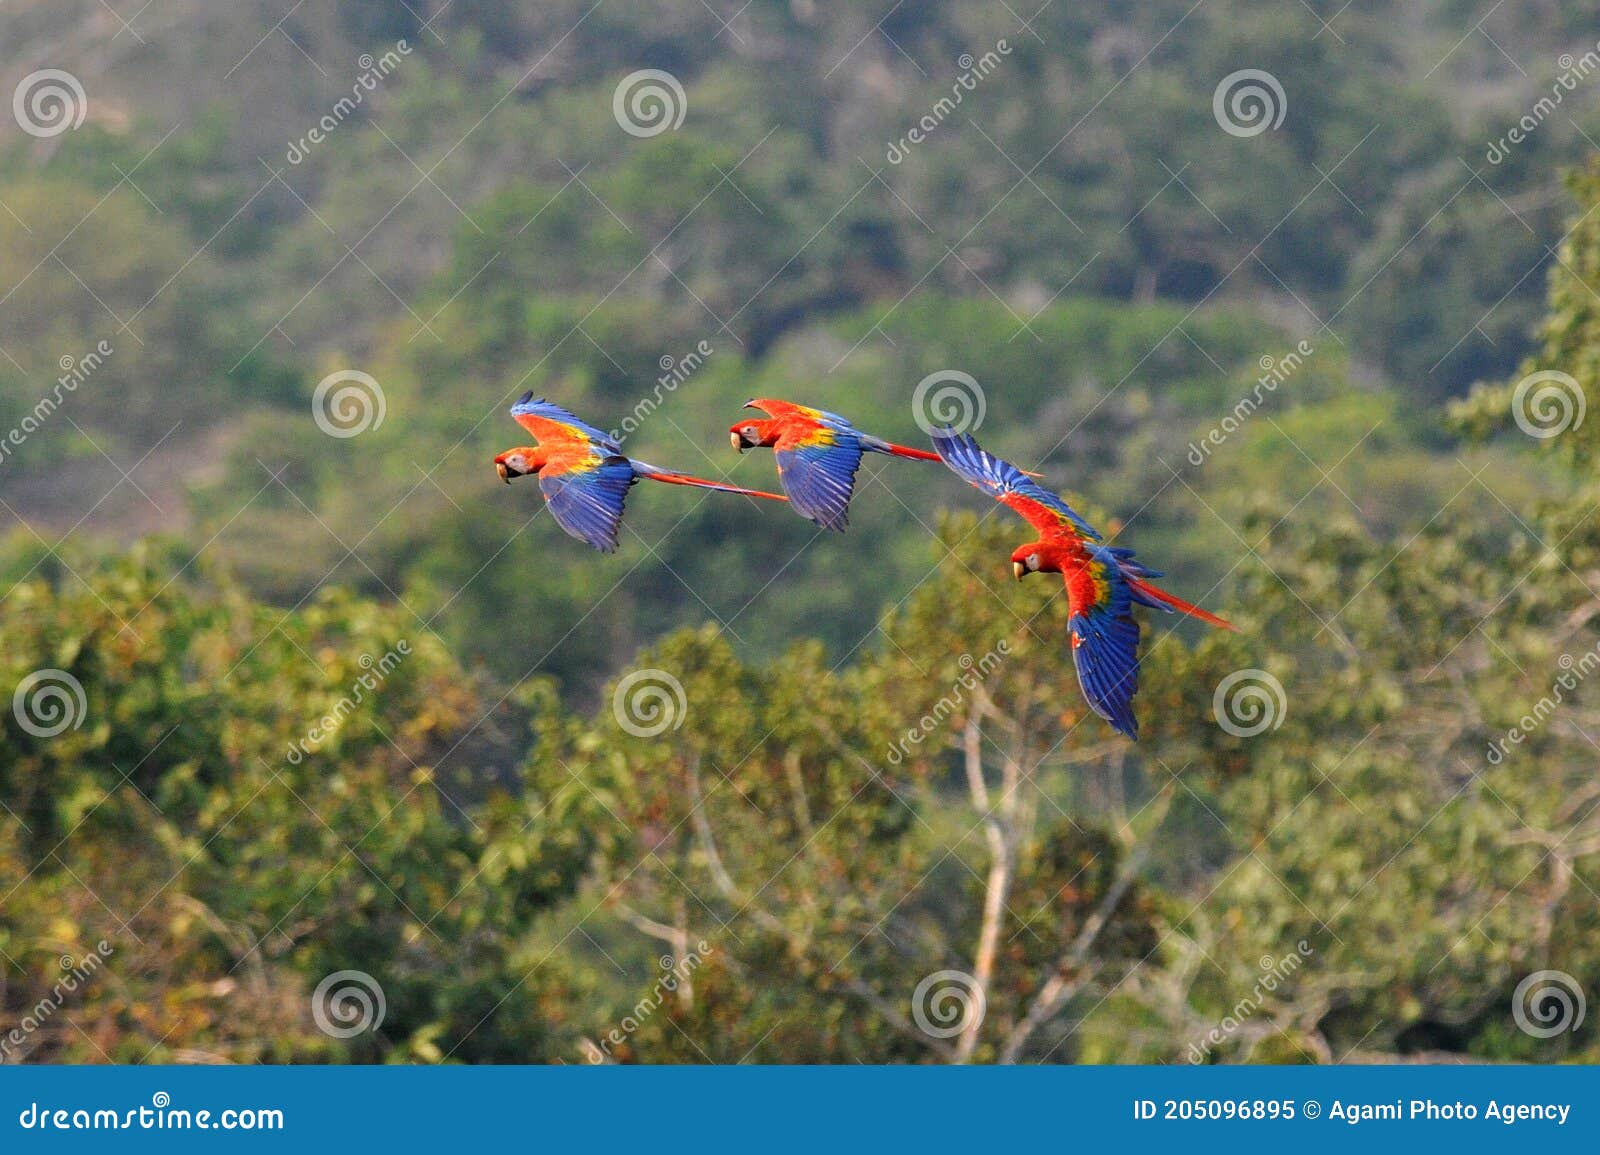 geelvleugelara, scarlet macaw, ara macao